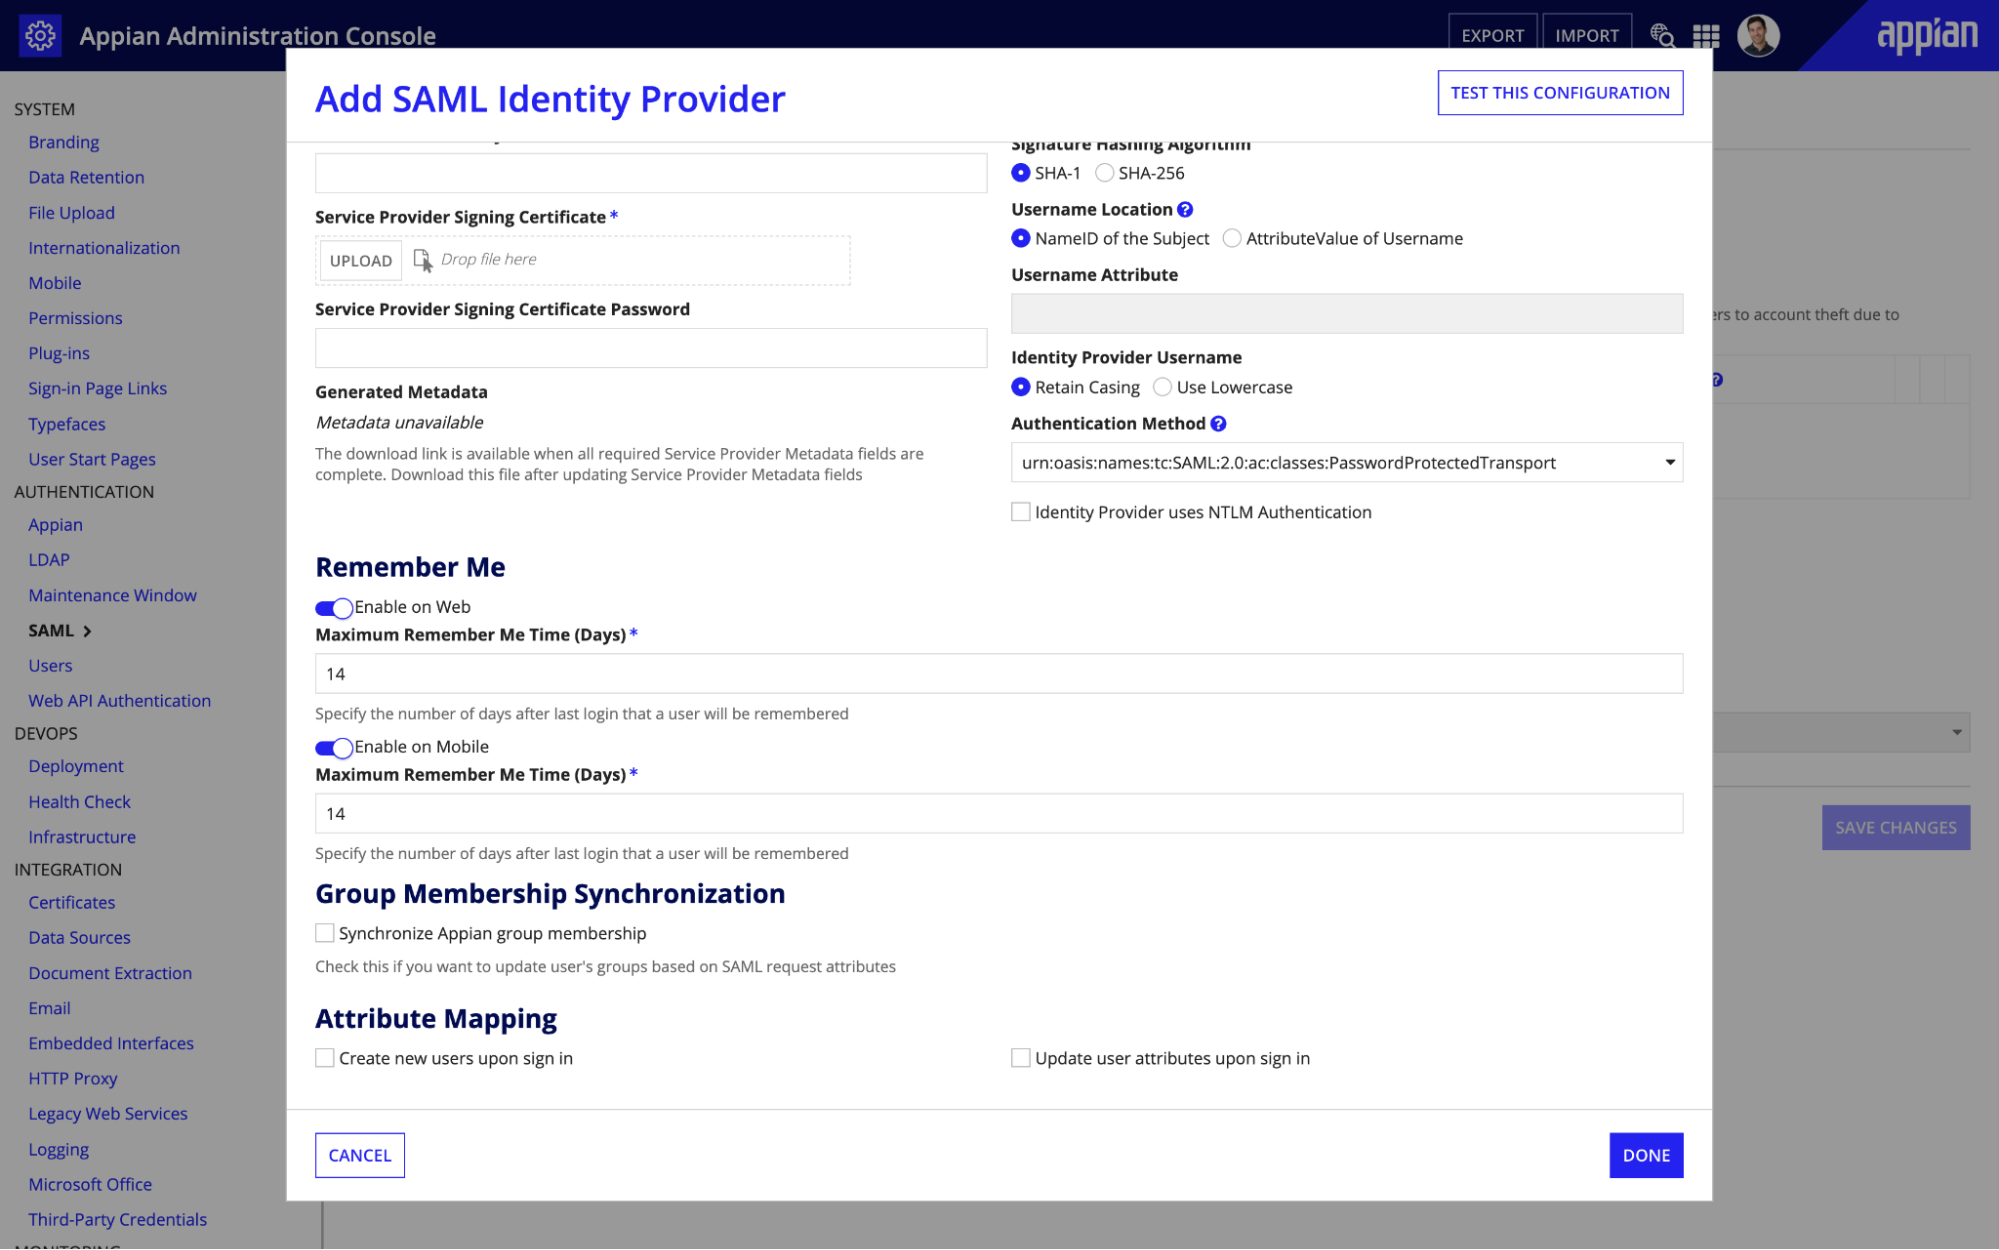 SAML Identify Provider - "Remember Me"